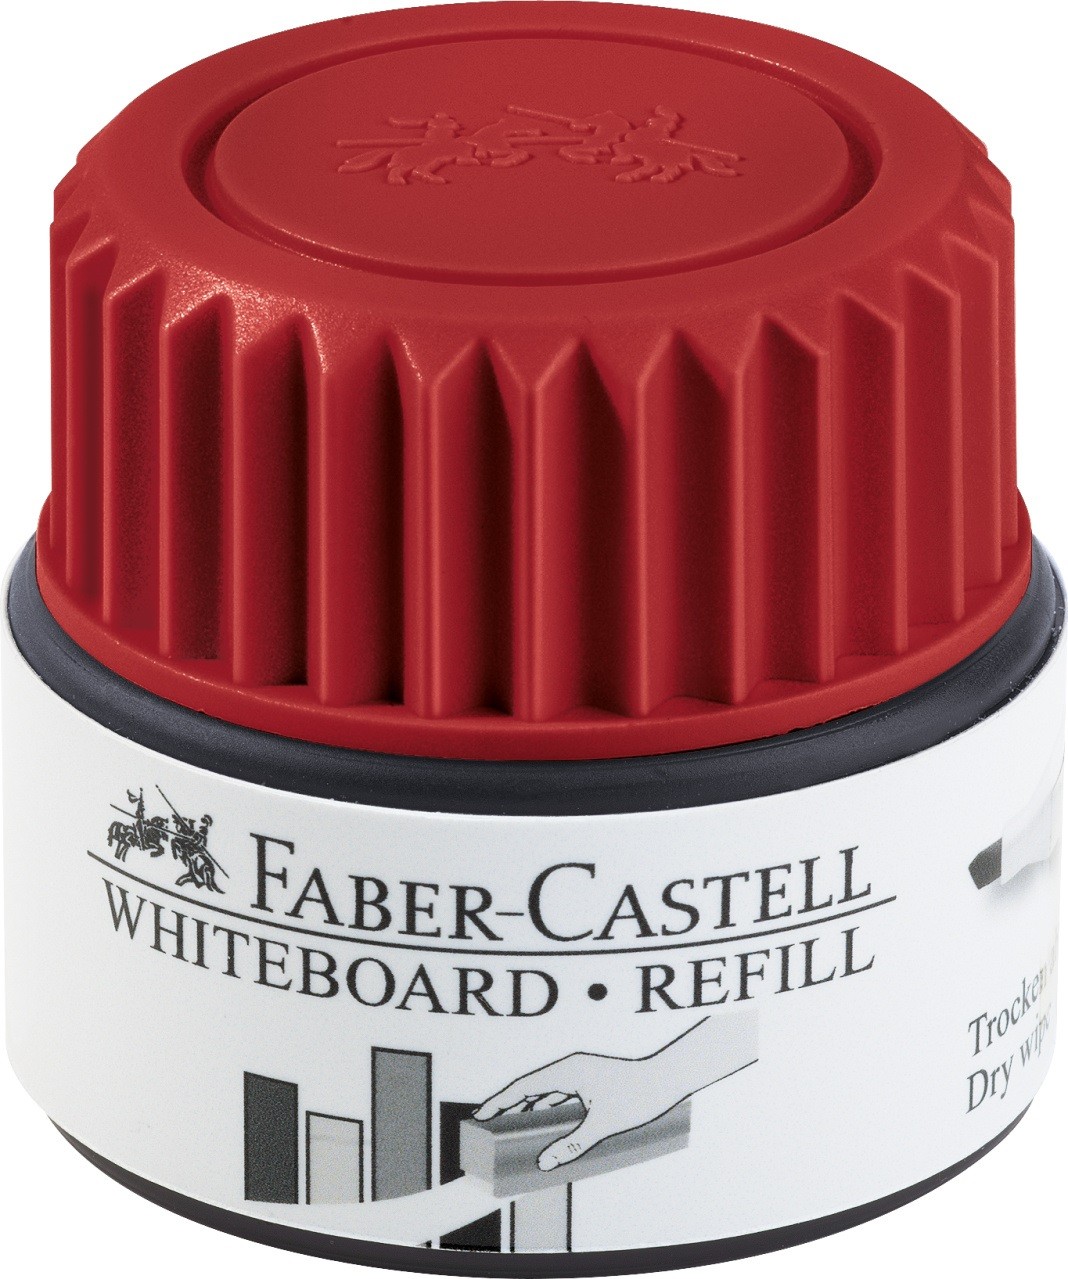 Чернила для маркеров купить. Чернила для маркера Whiteboard. Faber Castell Refill permanent. Чернила для маркеров для белой доски.